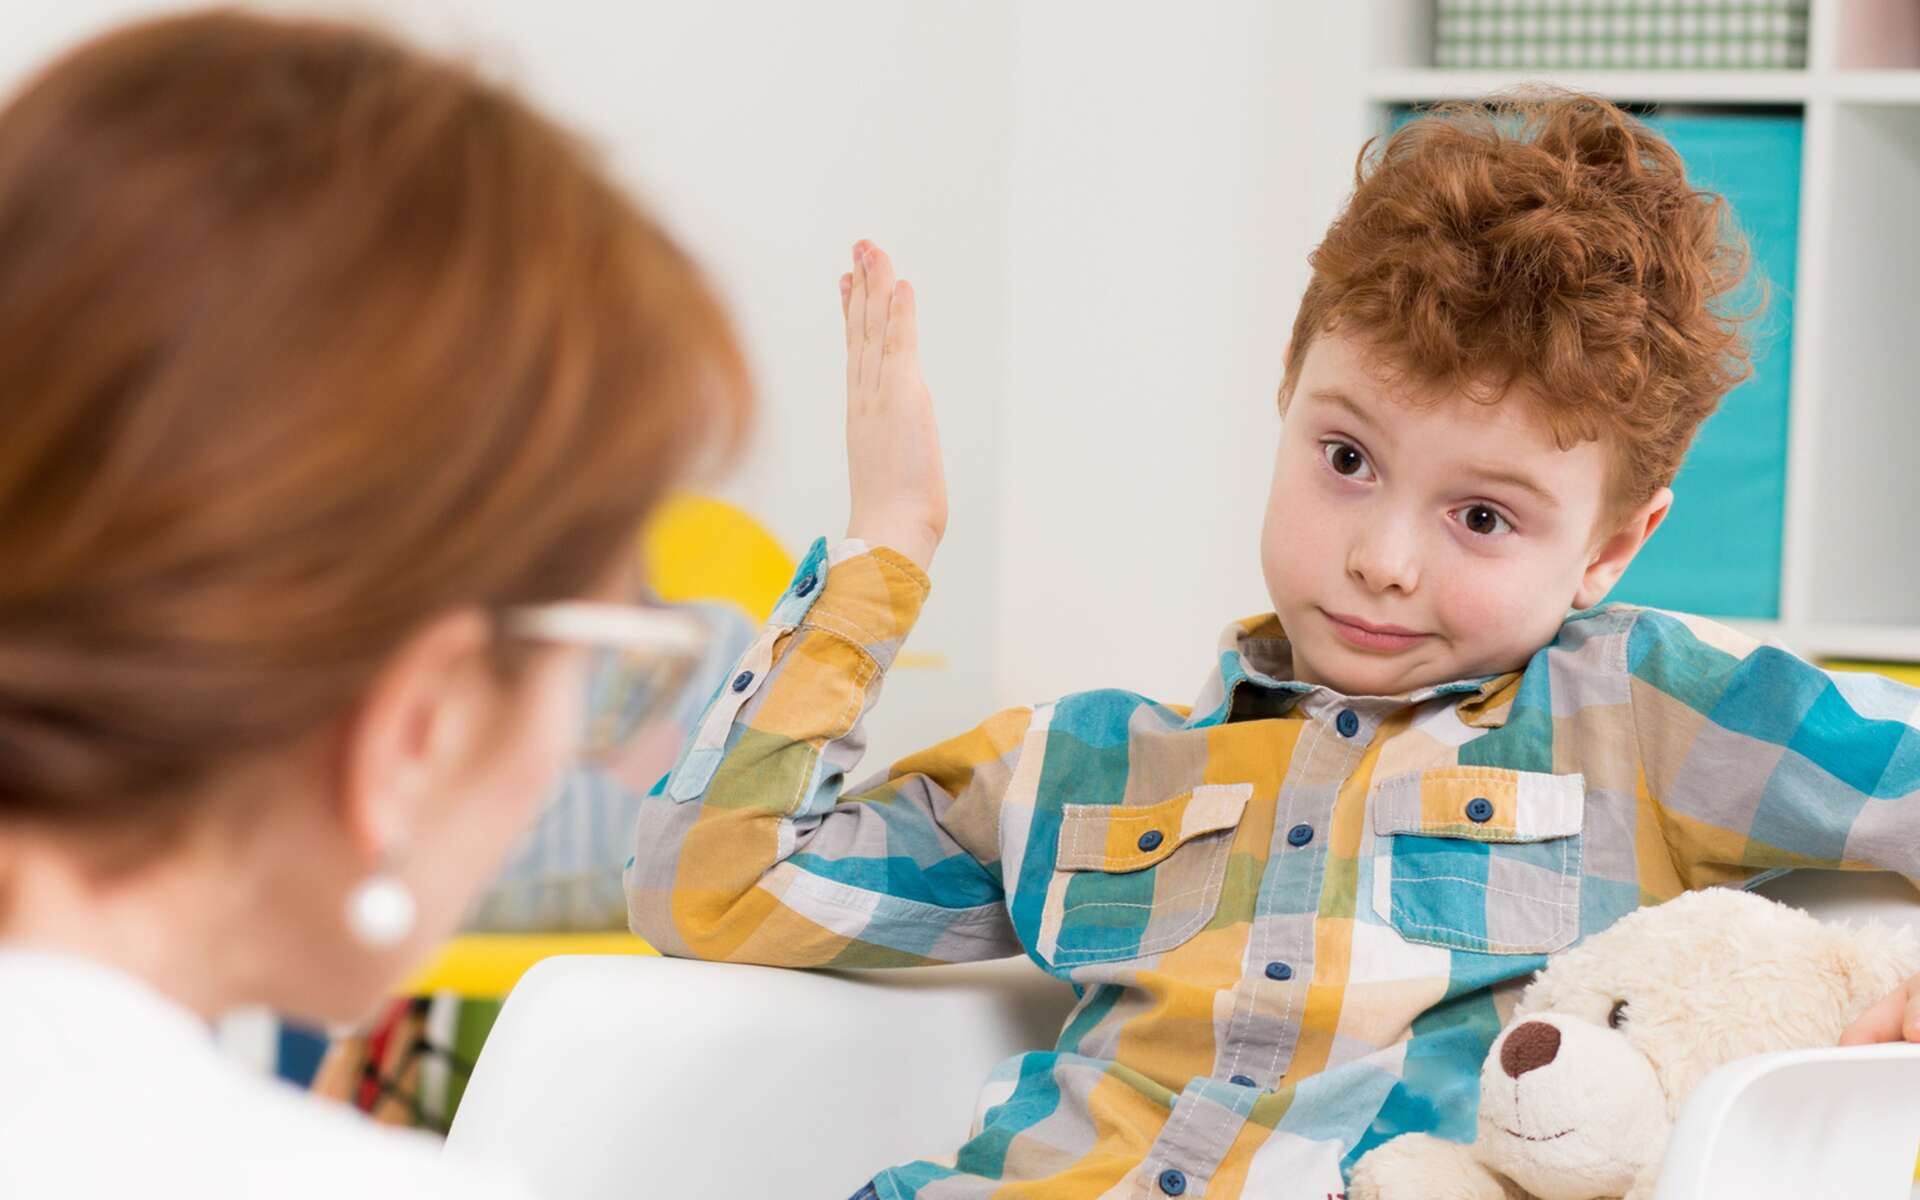 TDAH : voici ce qu'il faut surveiller pour repérer les premiers signes chez votre enfant